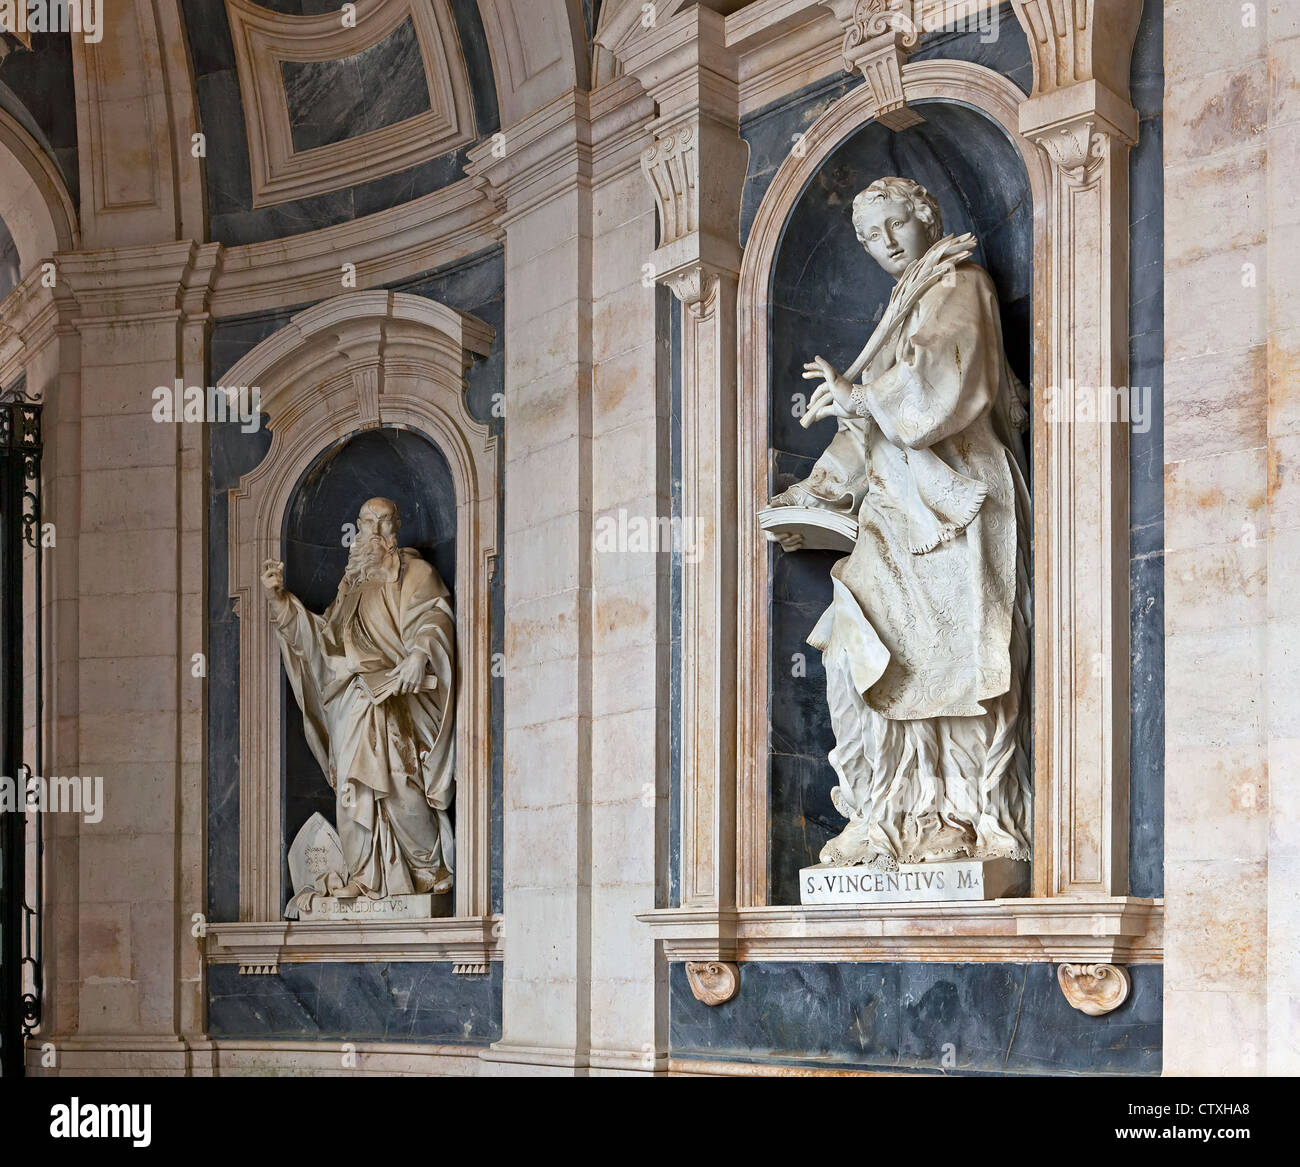 St. Vincent (rechts) und St. Benedict (links) italienischen Barock Skulpturen im Nationalpalast von Mafra und Kloster in Portugal. Stockfoto